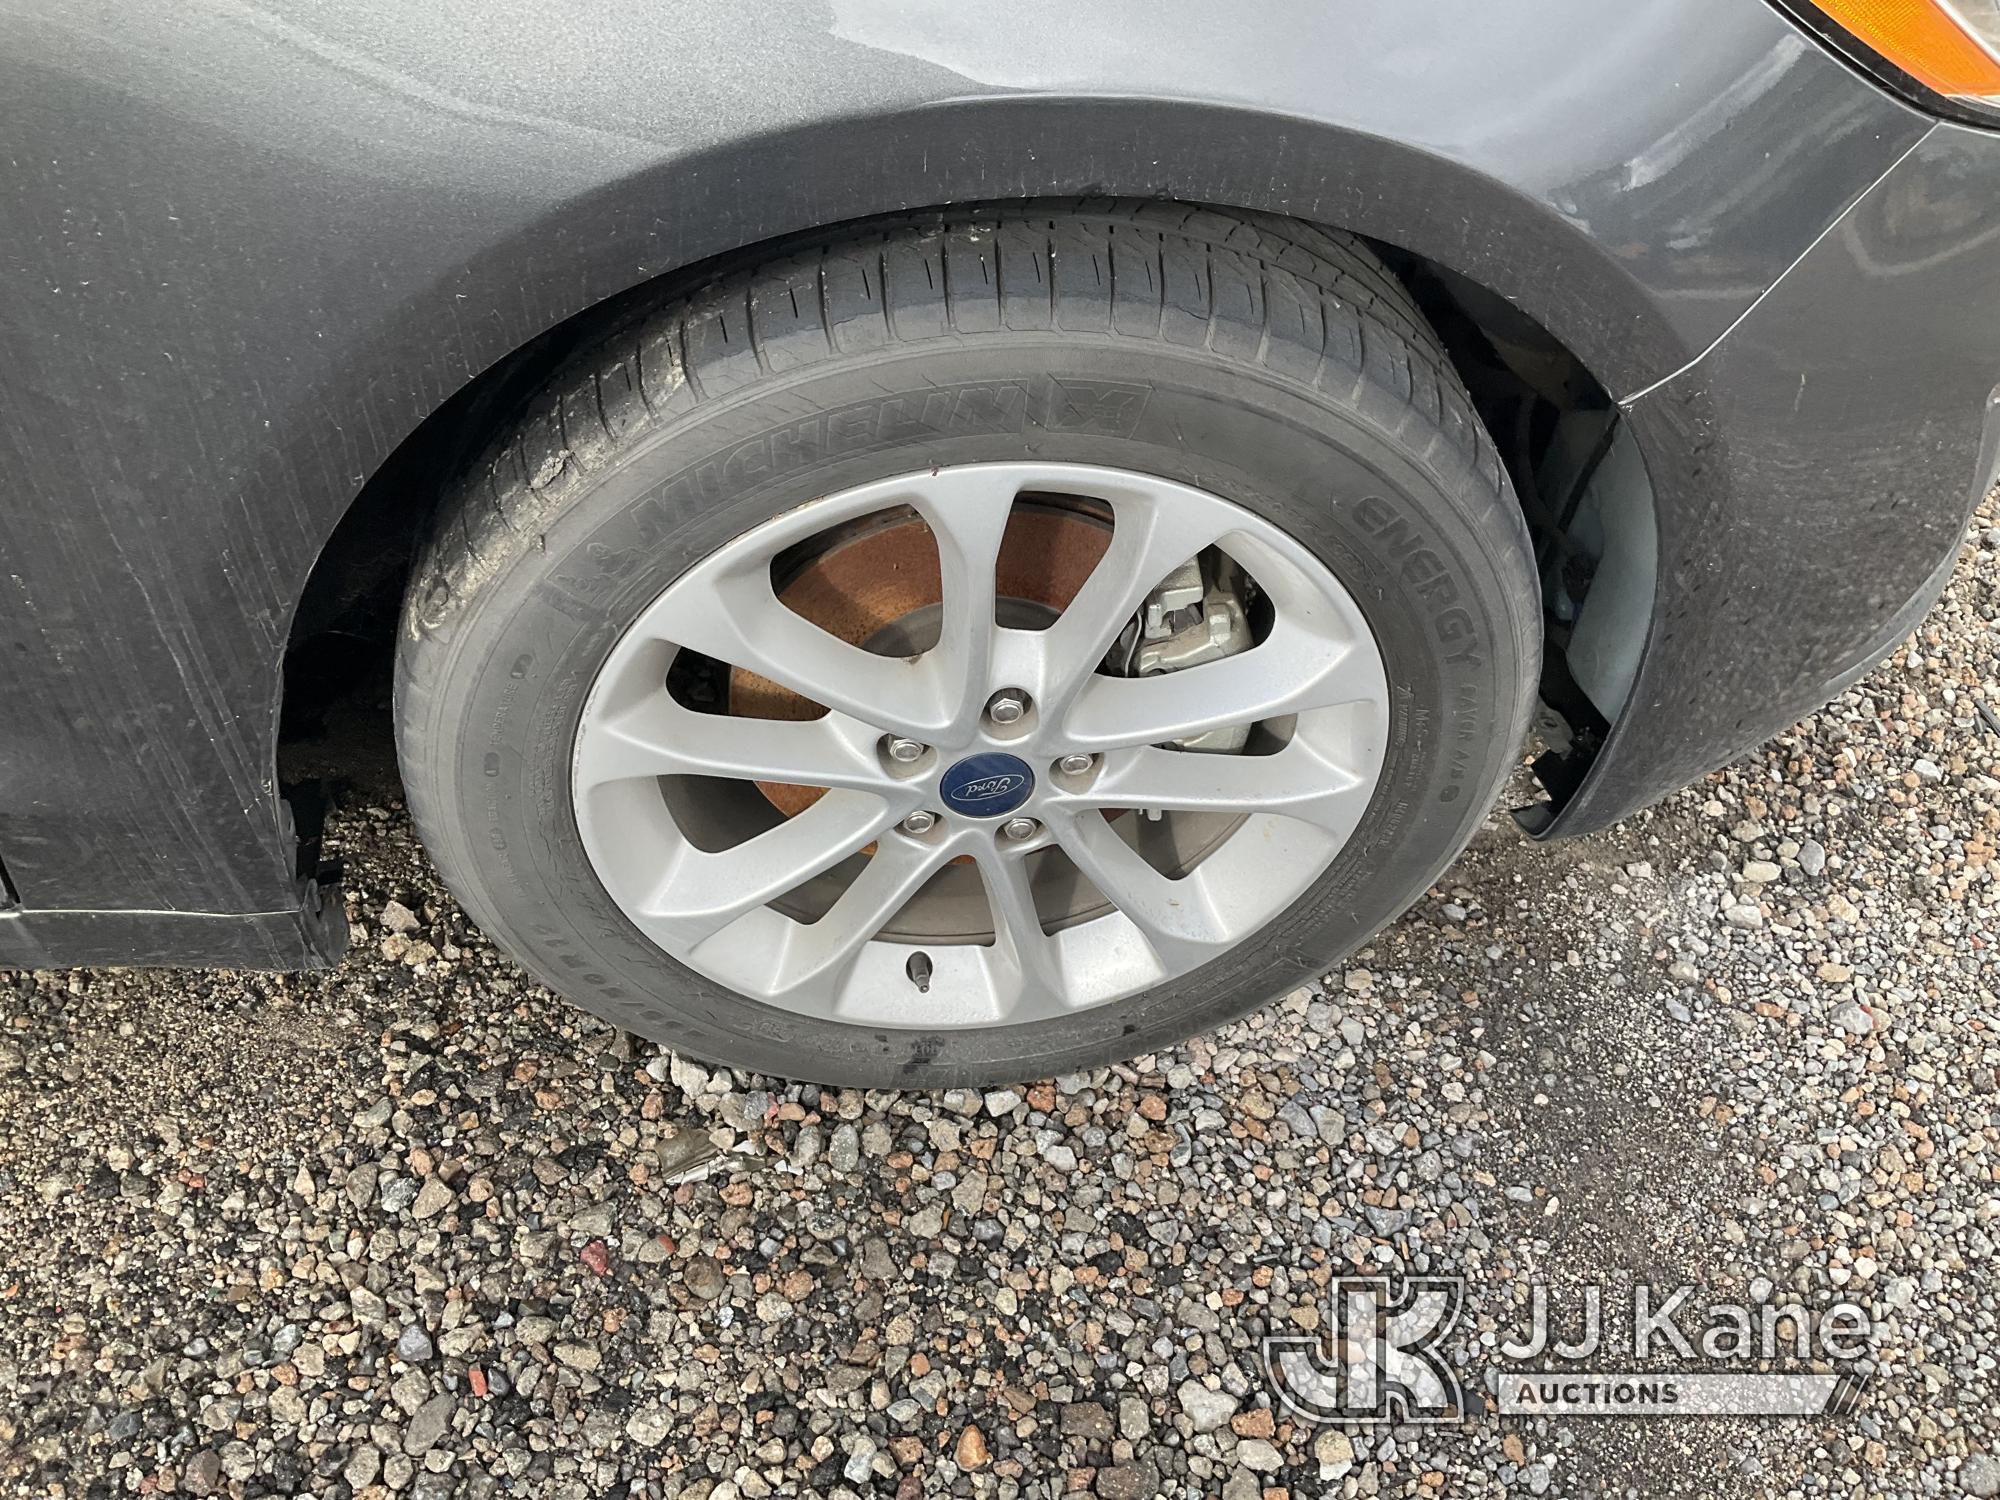 (Jurupa Valley, CA) 2019 Ford Fusion 4-Door Sedan Not Running, Interior Parts Stripped, Rear End Dam